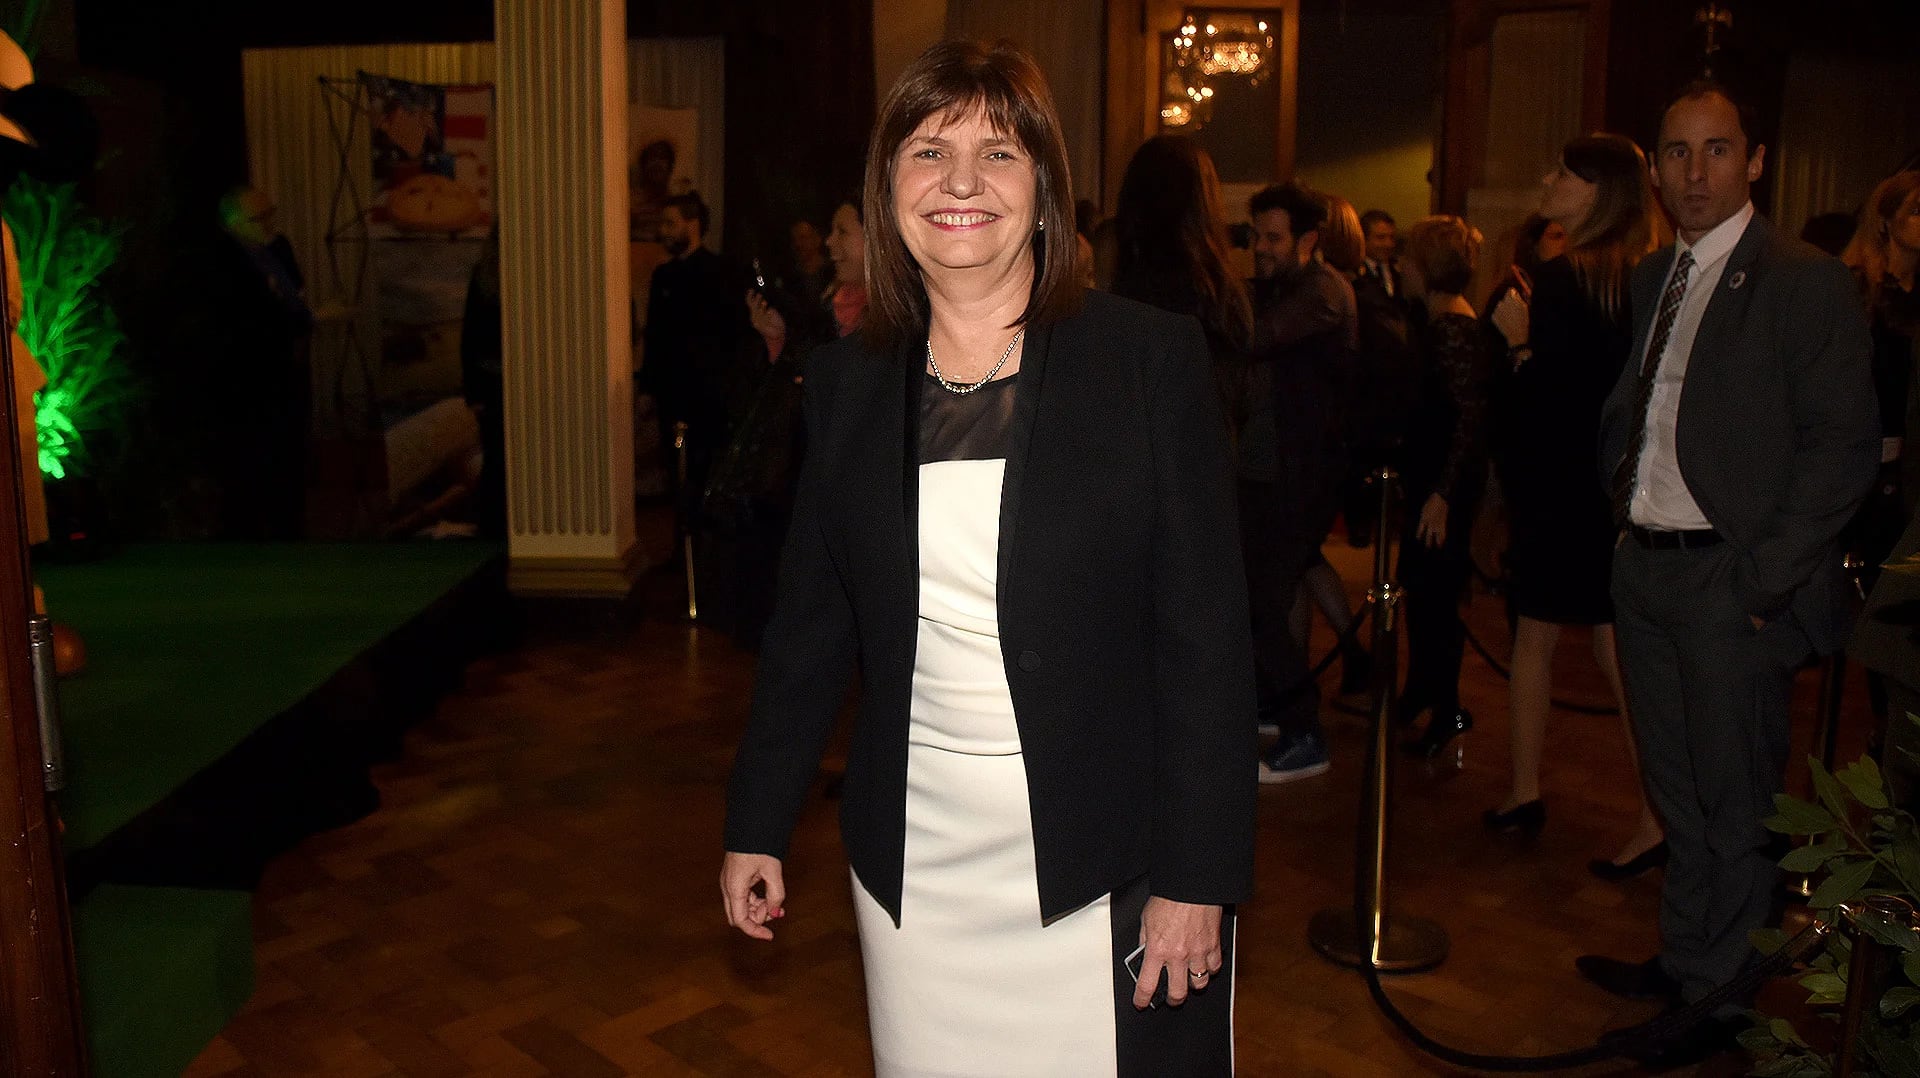 Patricia Bullrich, ministra de Seguridad